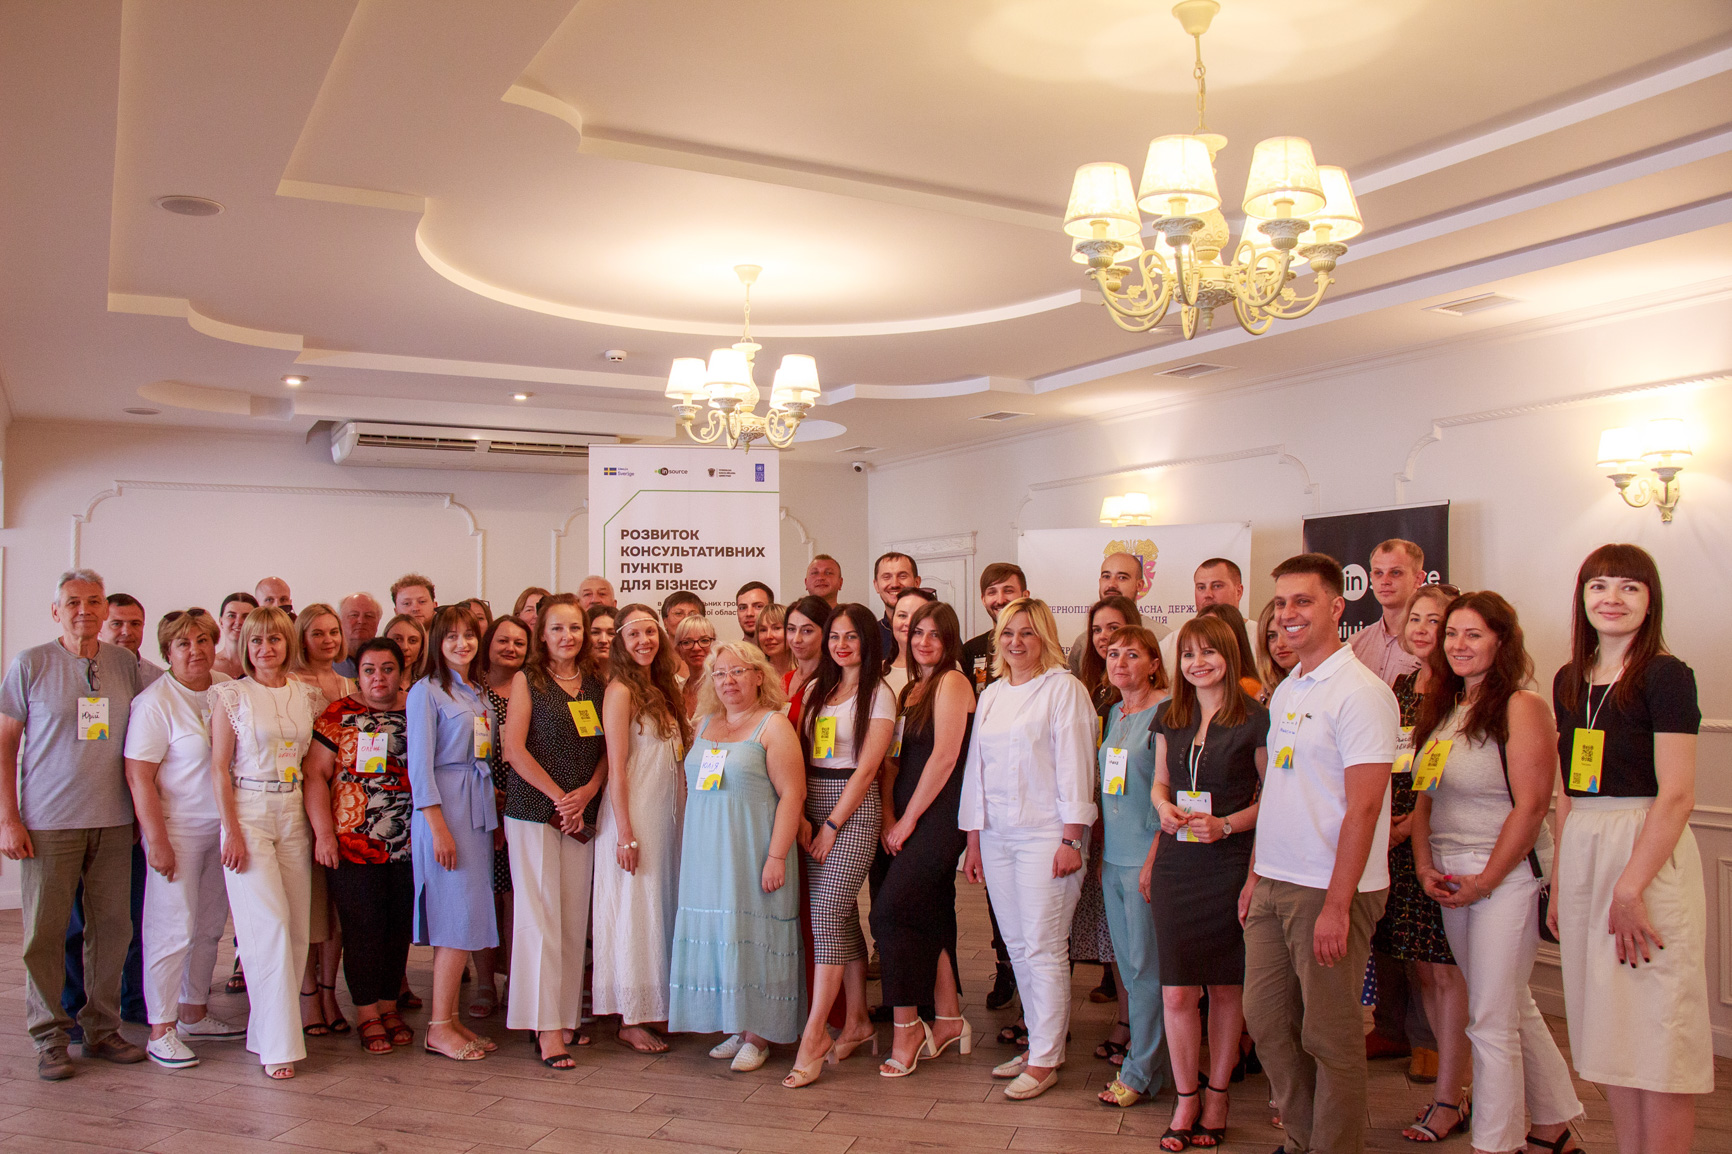 Підсумковий форум проєкту із розвитку консультативних пунктів для бізнесу на Тернопільщині